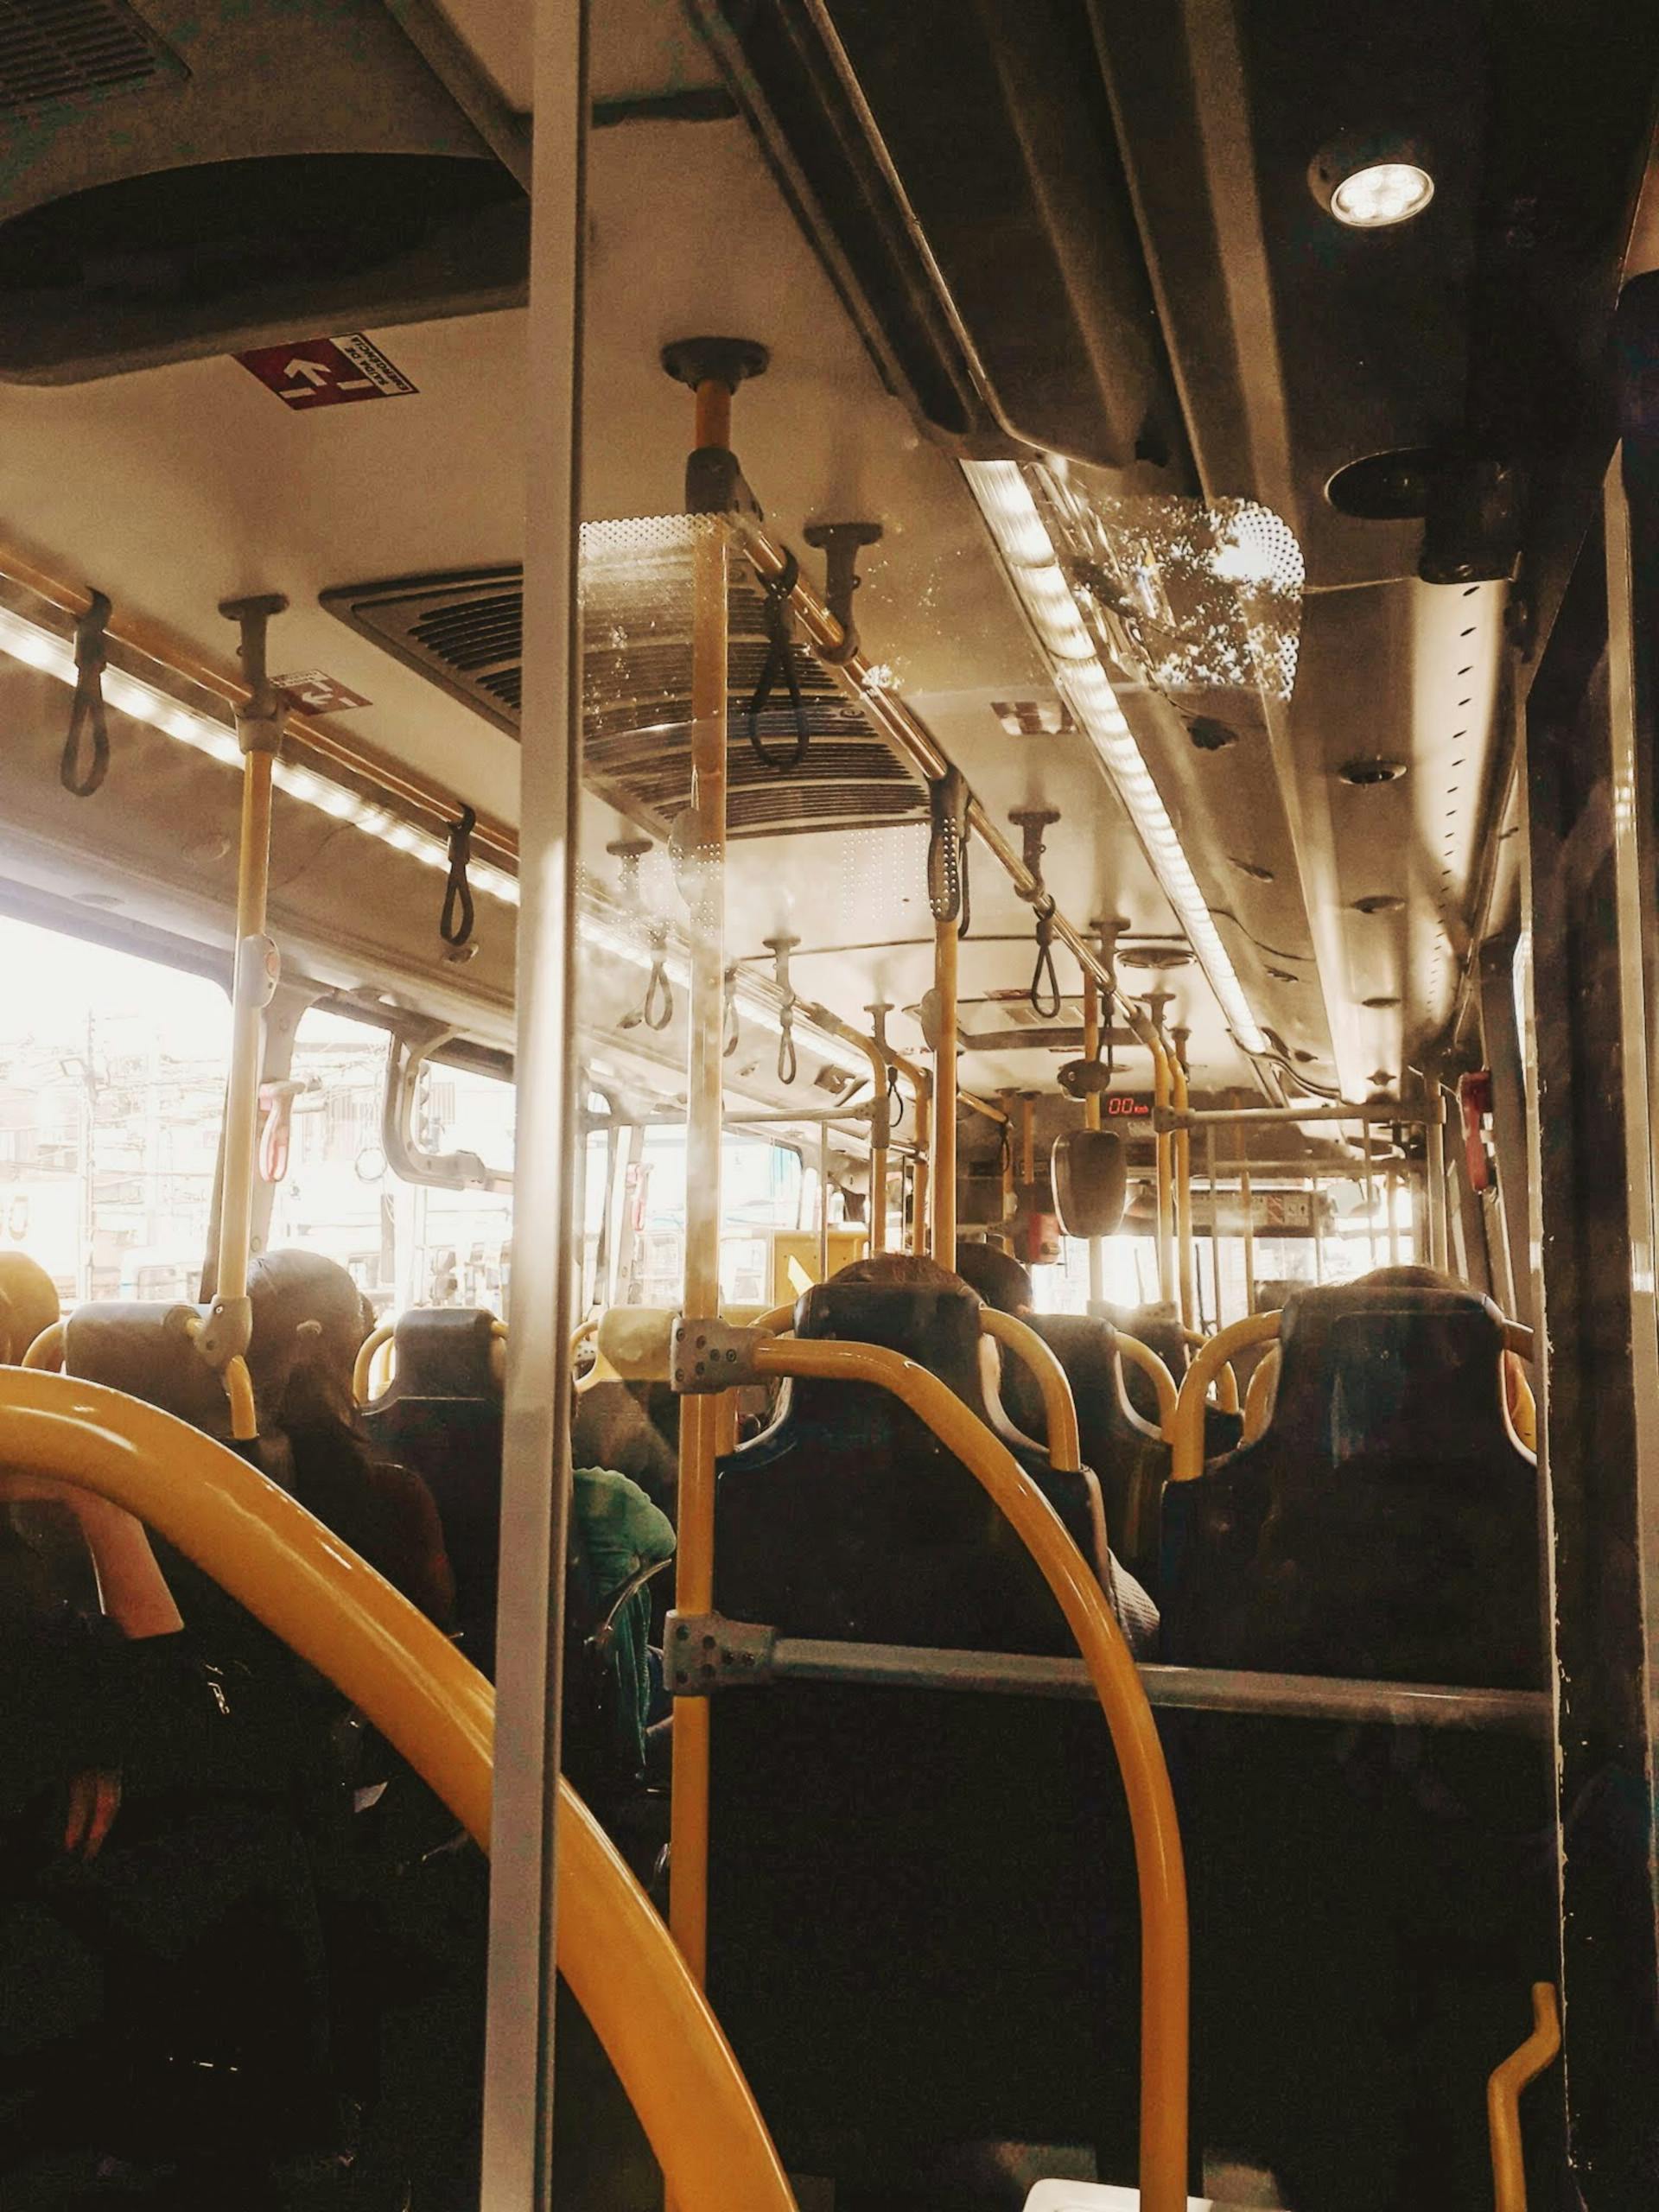 People inside a bus | Source: Pexels